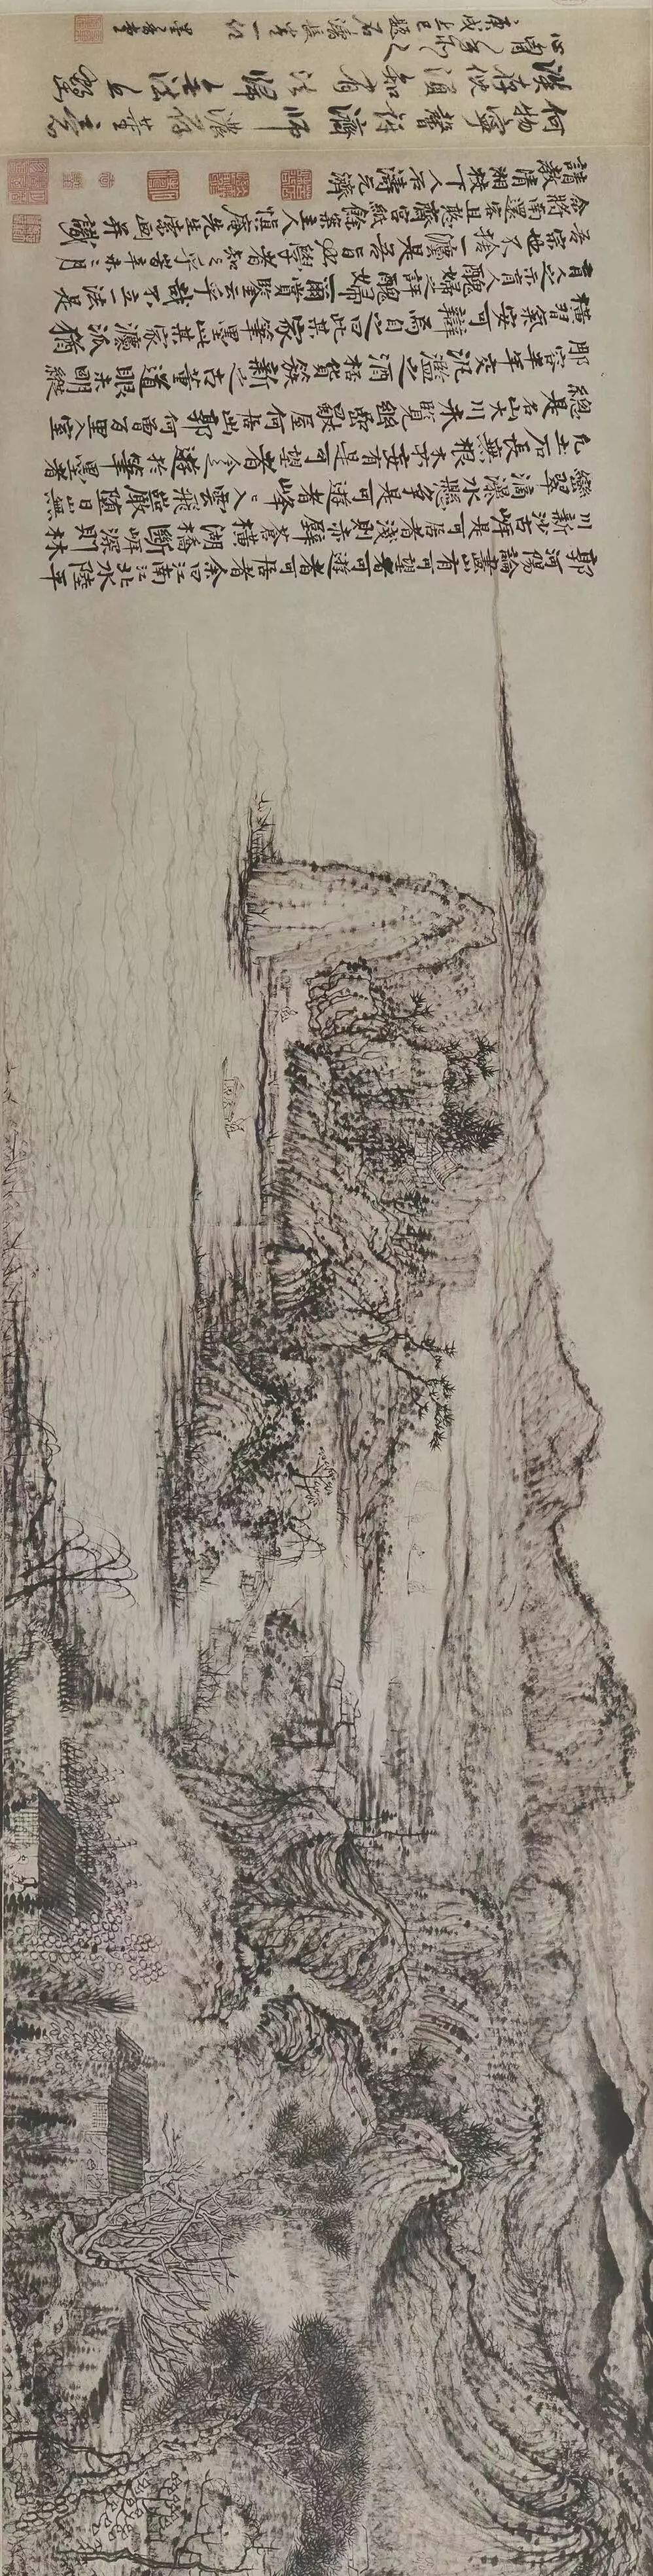 《淮扬洁秋图》描绘了河岸田野的清秋景色.